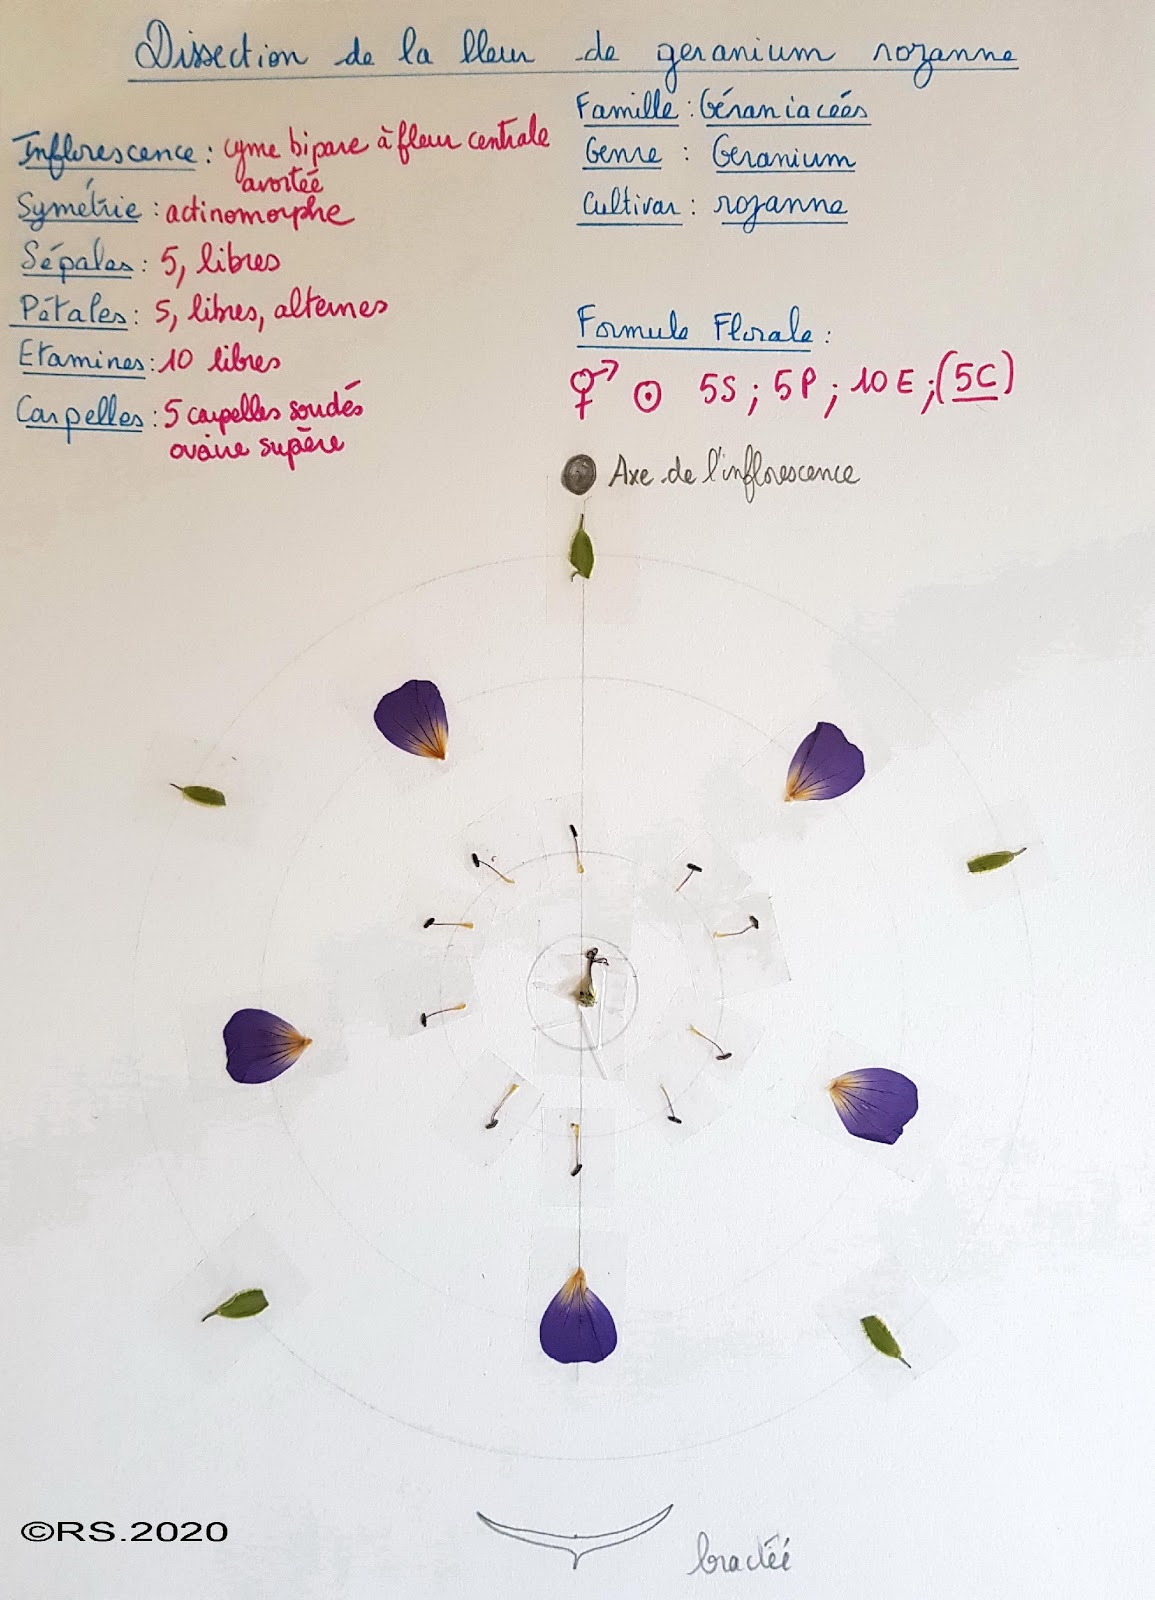 <b>Dissection de la fleur de géranium rozanne</b>